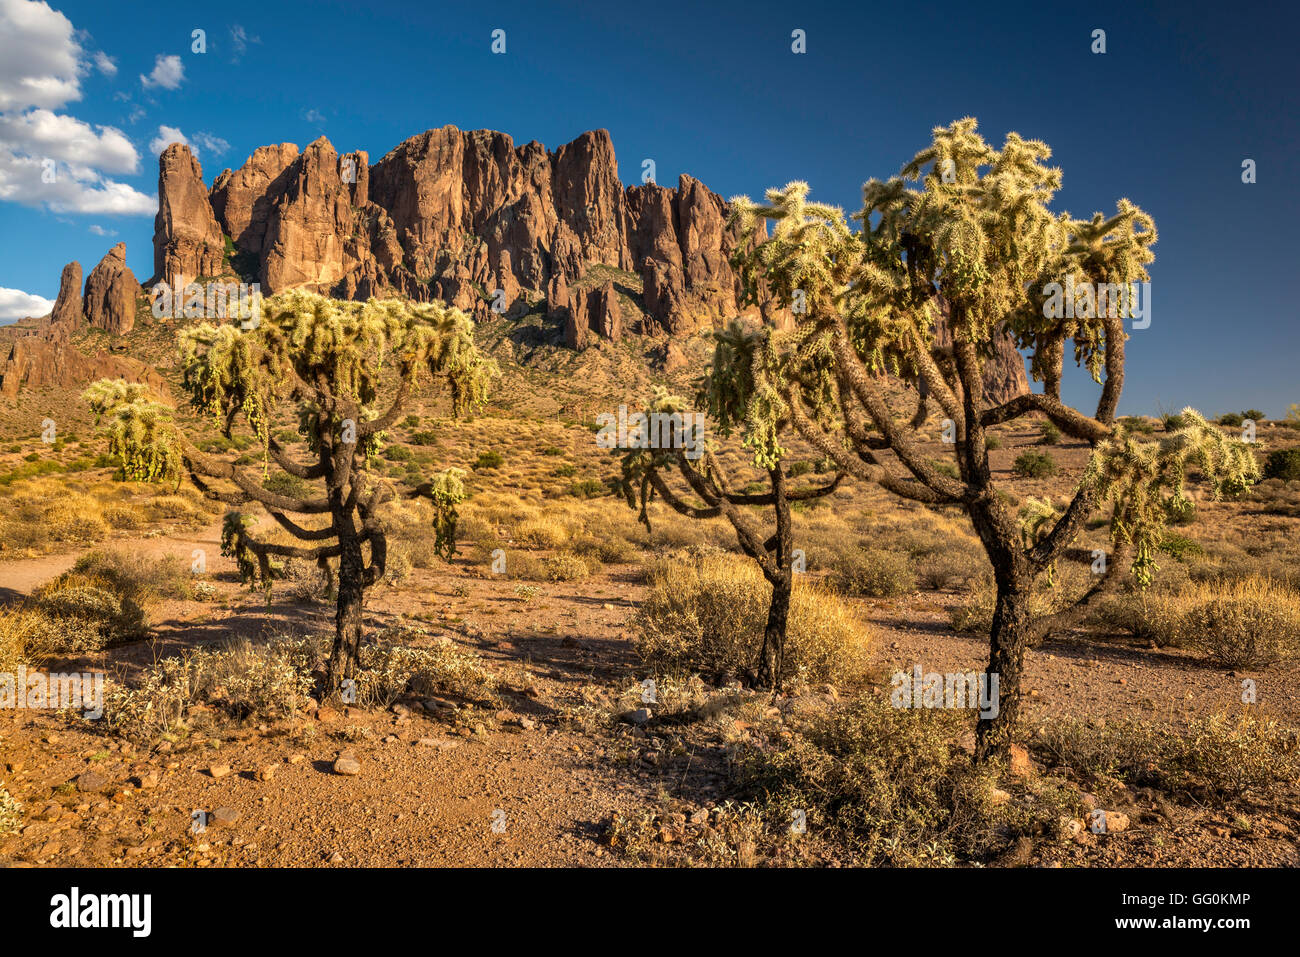 Camping paar mit erfinderischen Wassersack, Superstition Mountains,  Arizona, USA Stockfotografie - Alamy